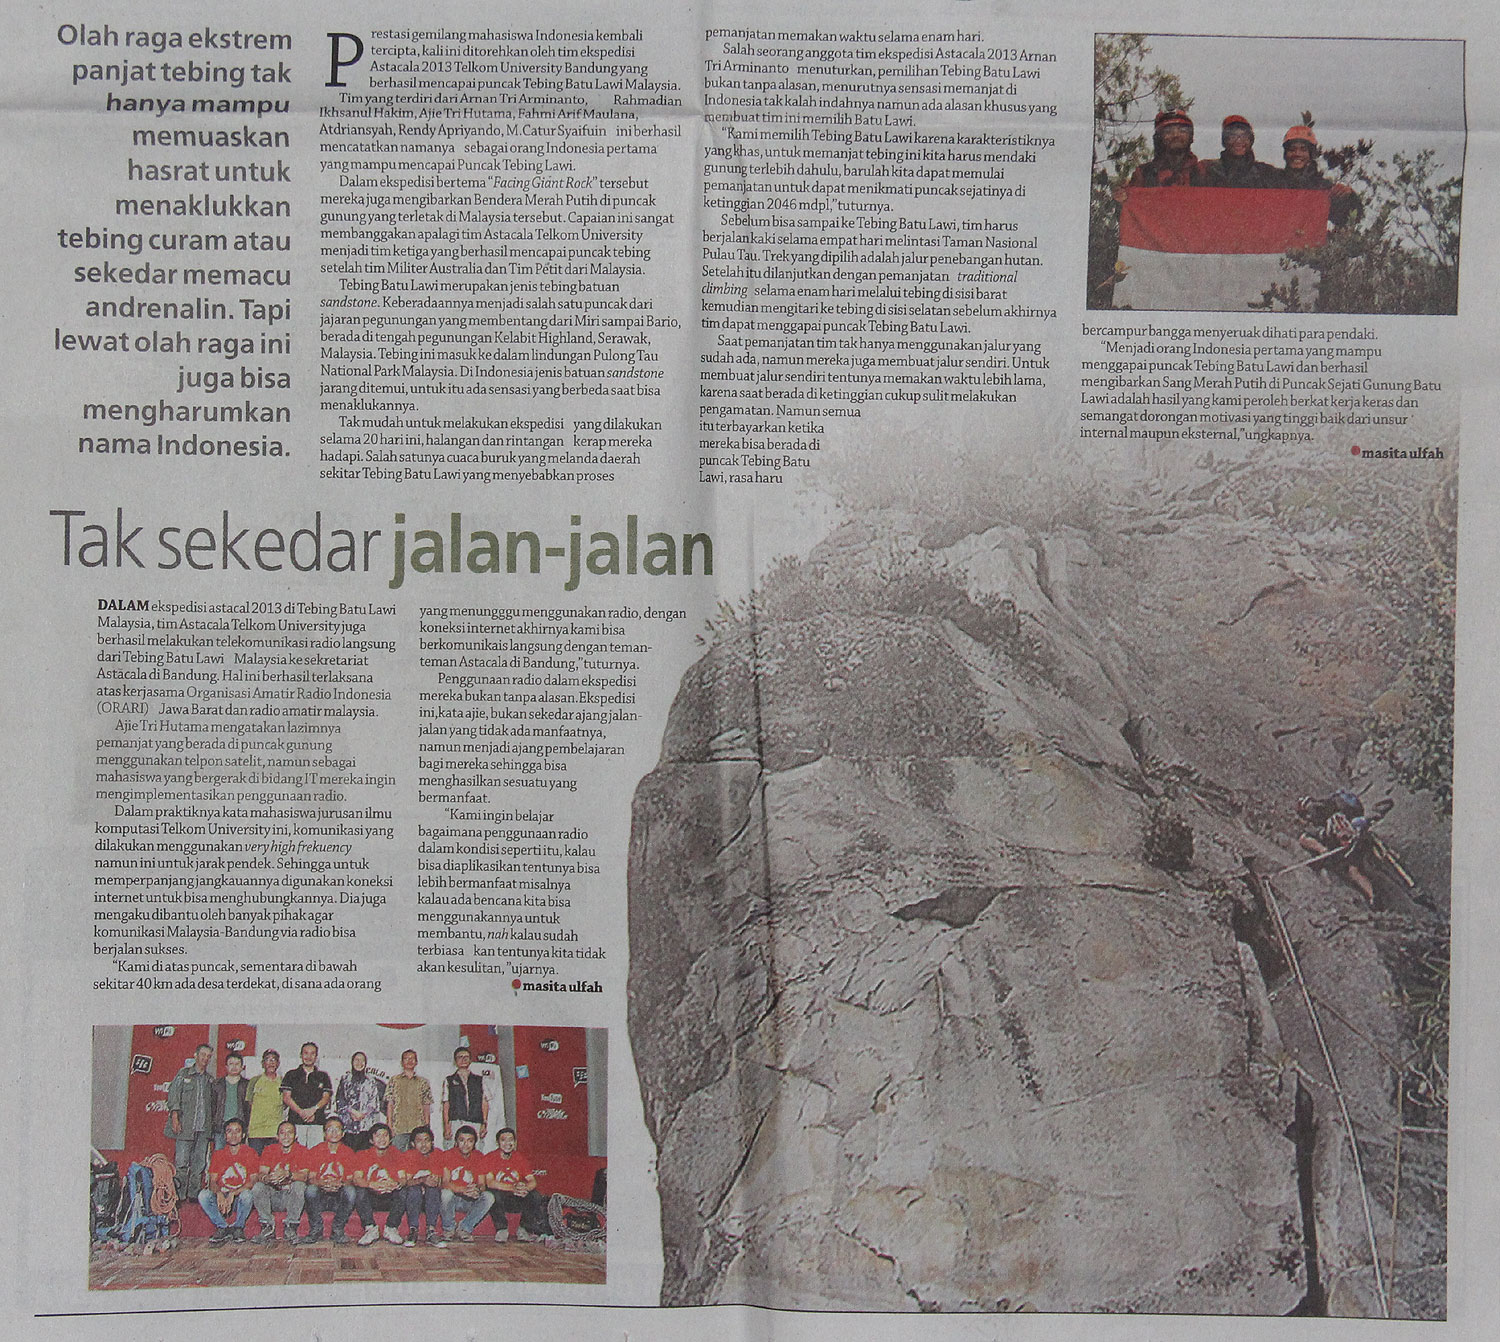 Ekspedisi Astacala Facing Giant Rock di Koran Sindo 2 (Buka Gambar pada Tautan Baru untuk Diperbesar)